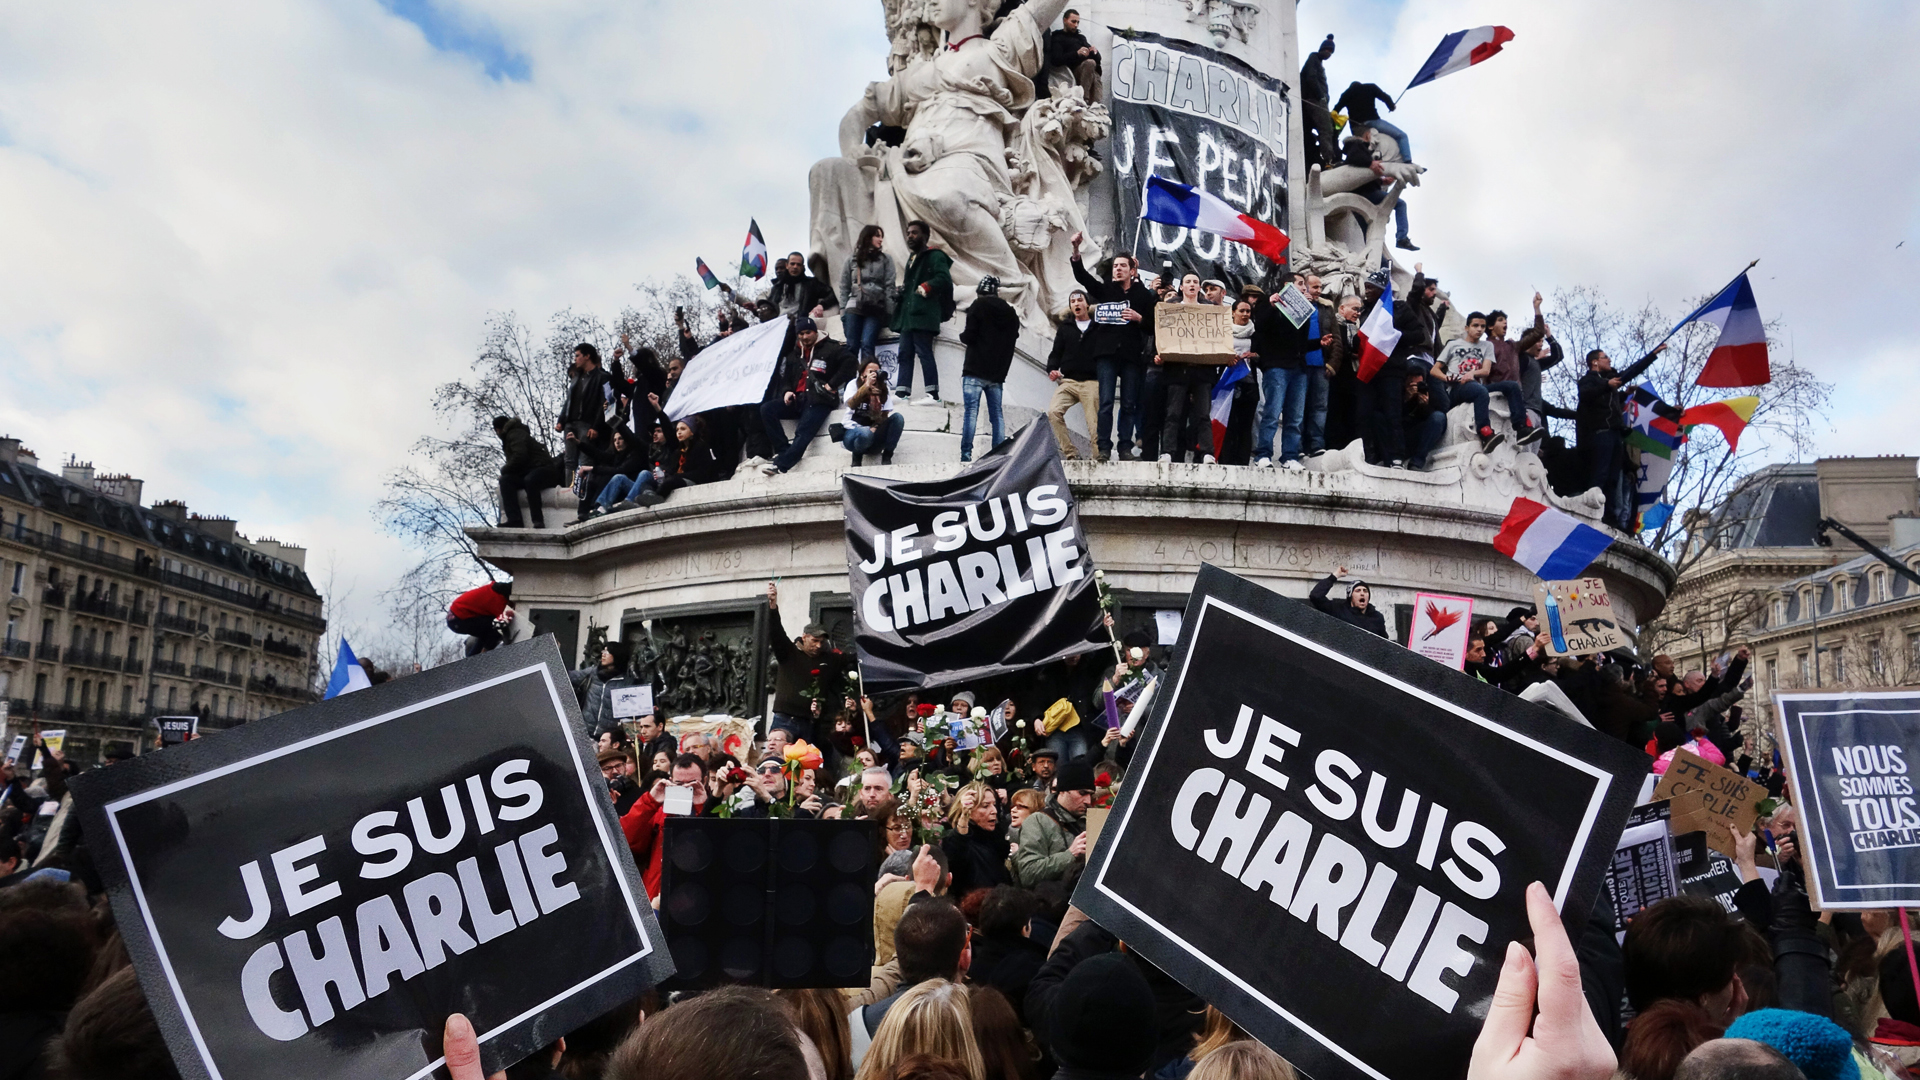 Mehrere Millionen Menschen teilten bei Twitter den Hashtag #JeSuisCharlie